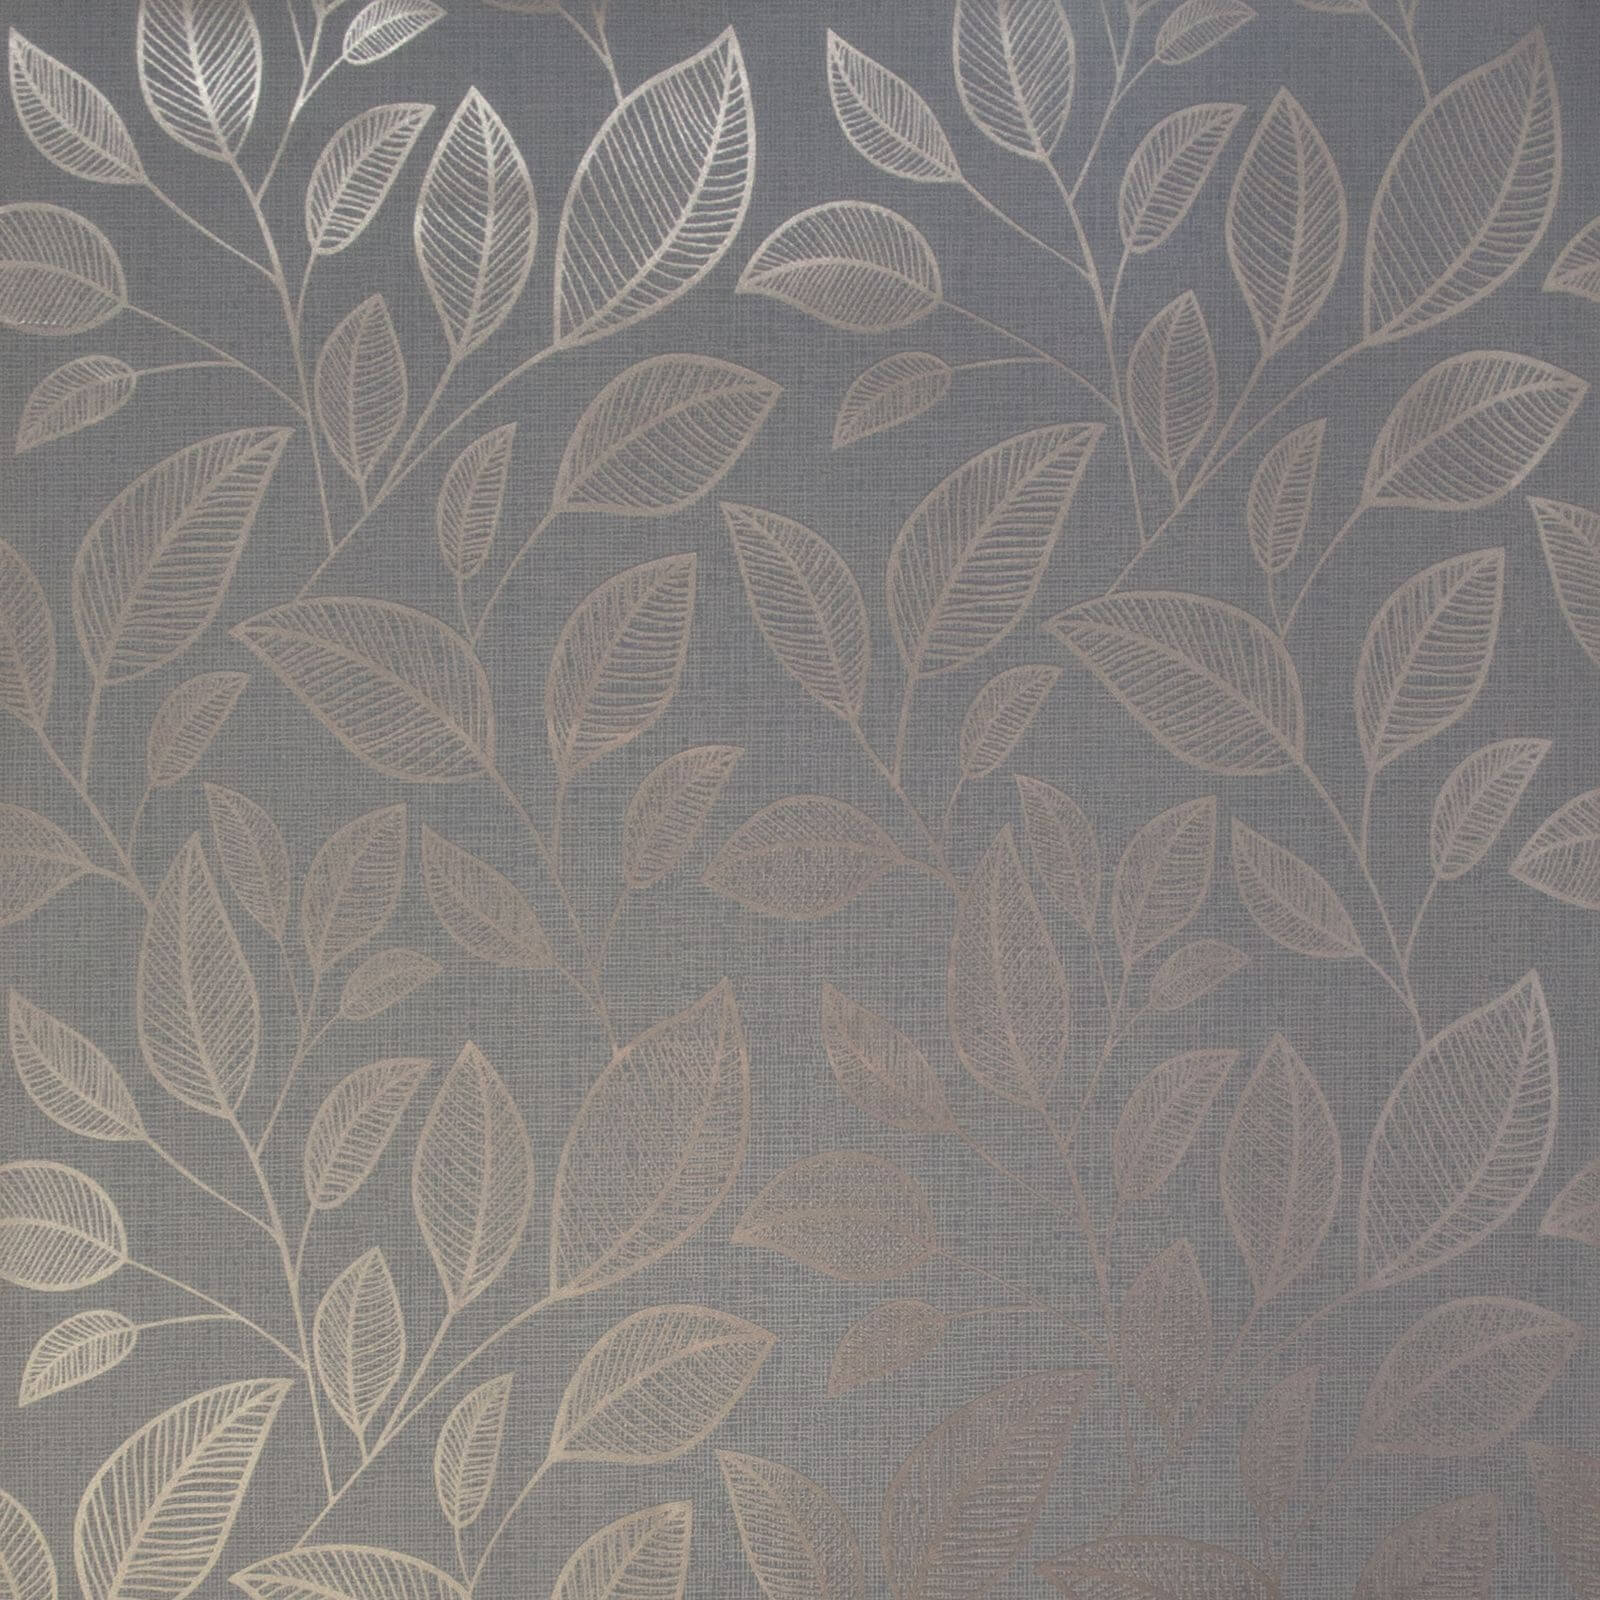 Belgravia Decor Rosemoor Tree Textured Metallic Rose Gold Wallpaper